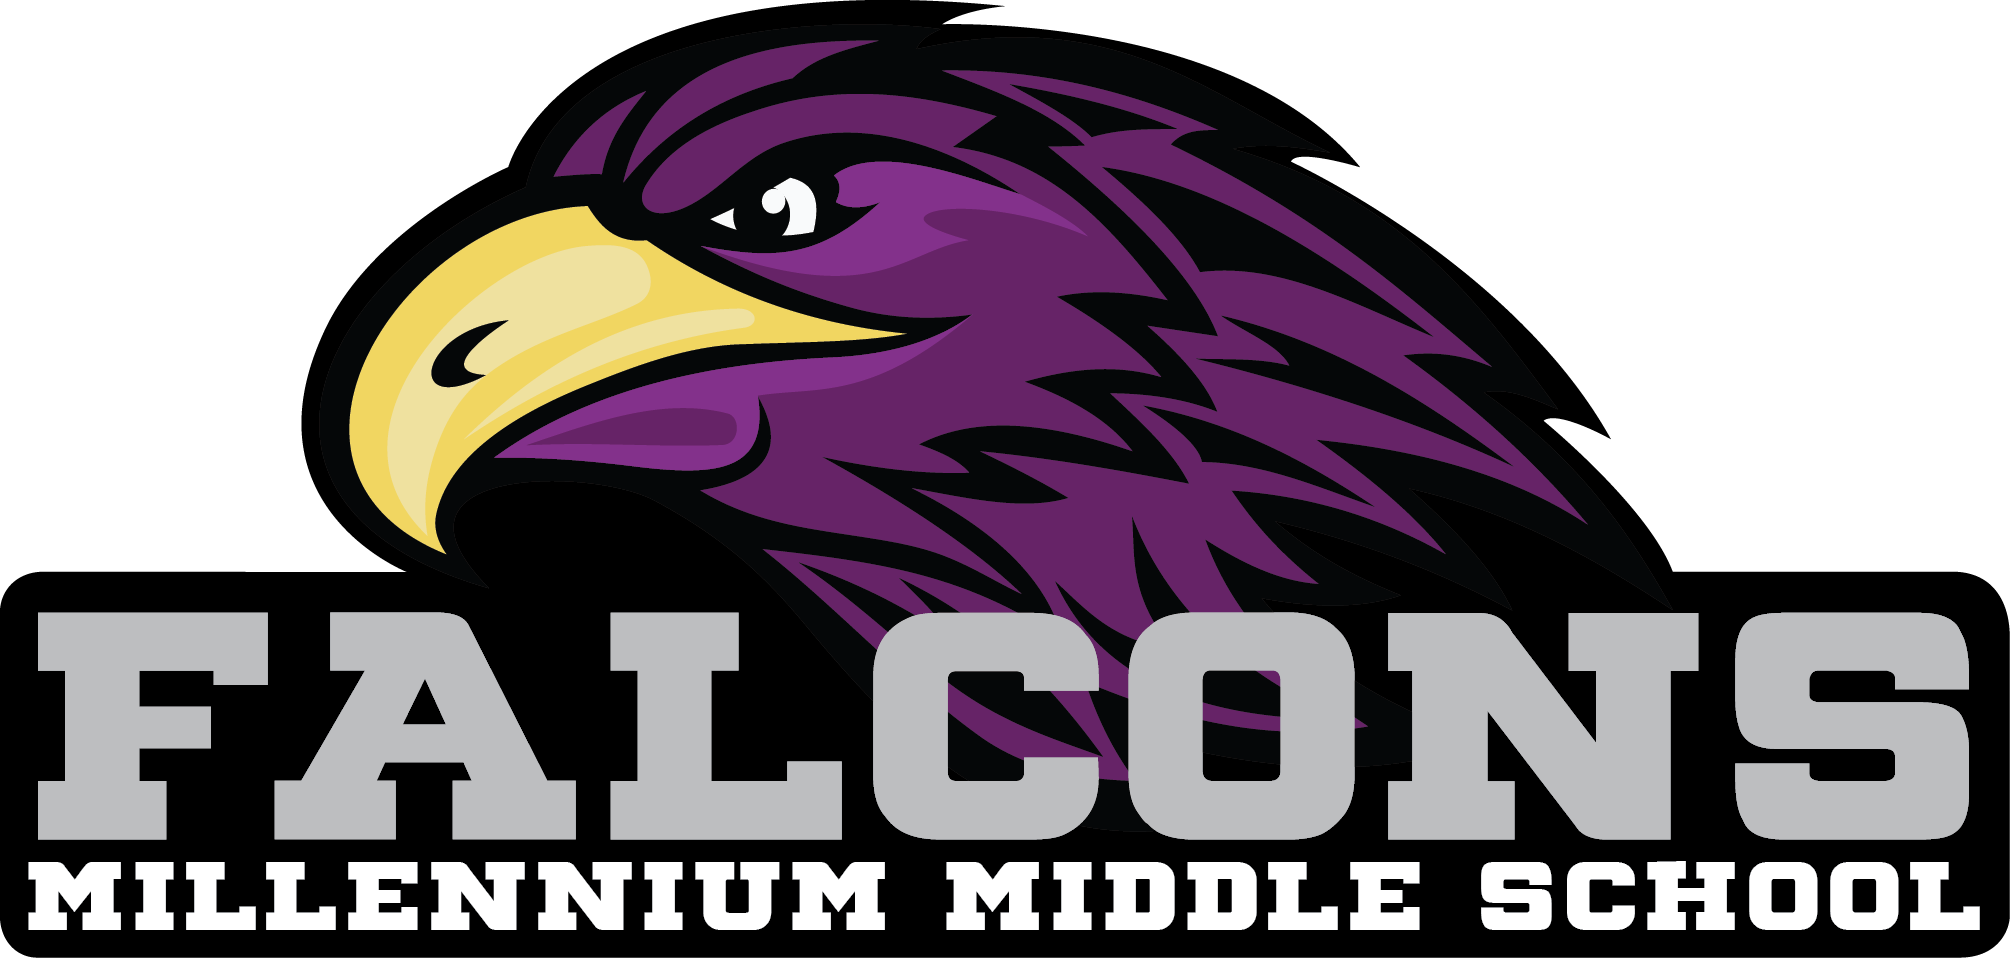 falcon clipart purple